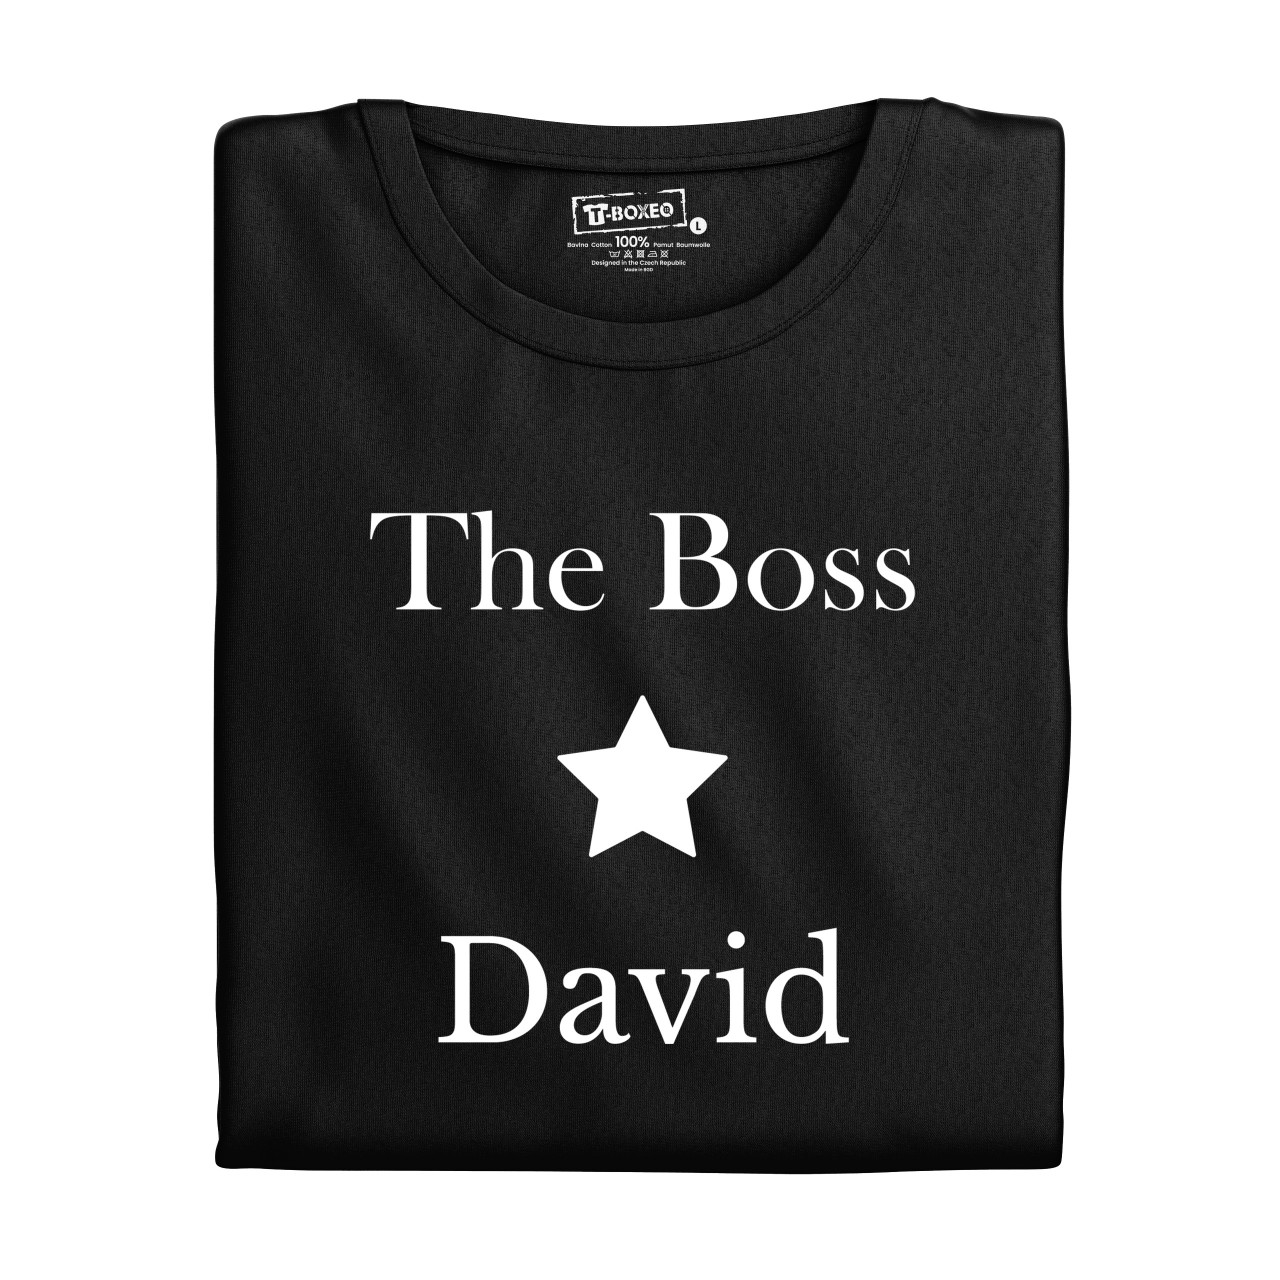 Pánské tričko s potiskem “The Boss” s vlastním jménem